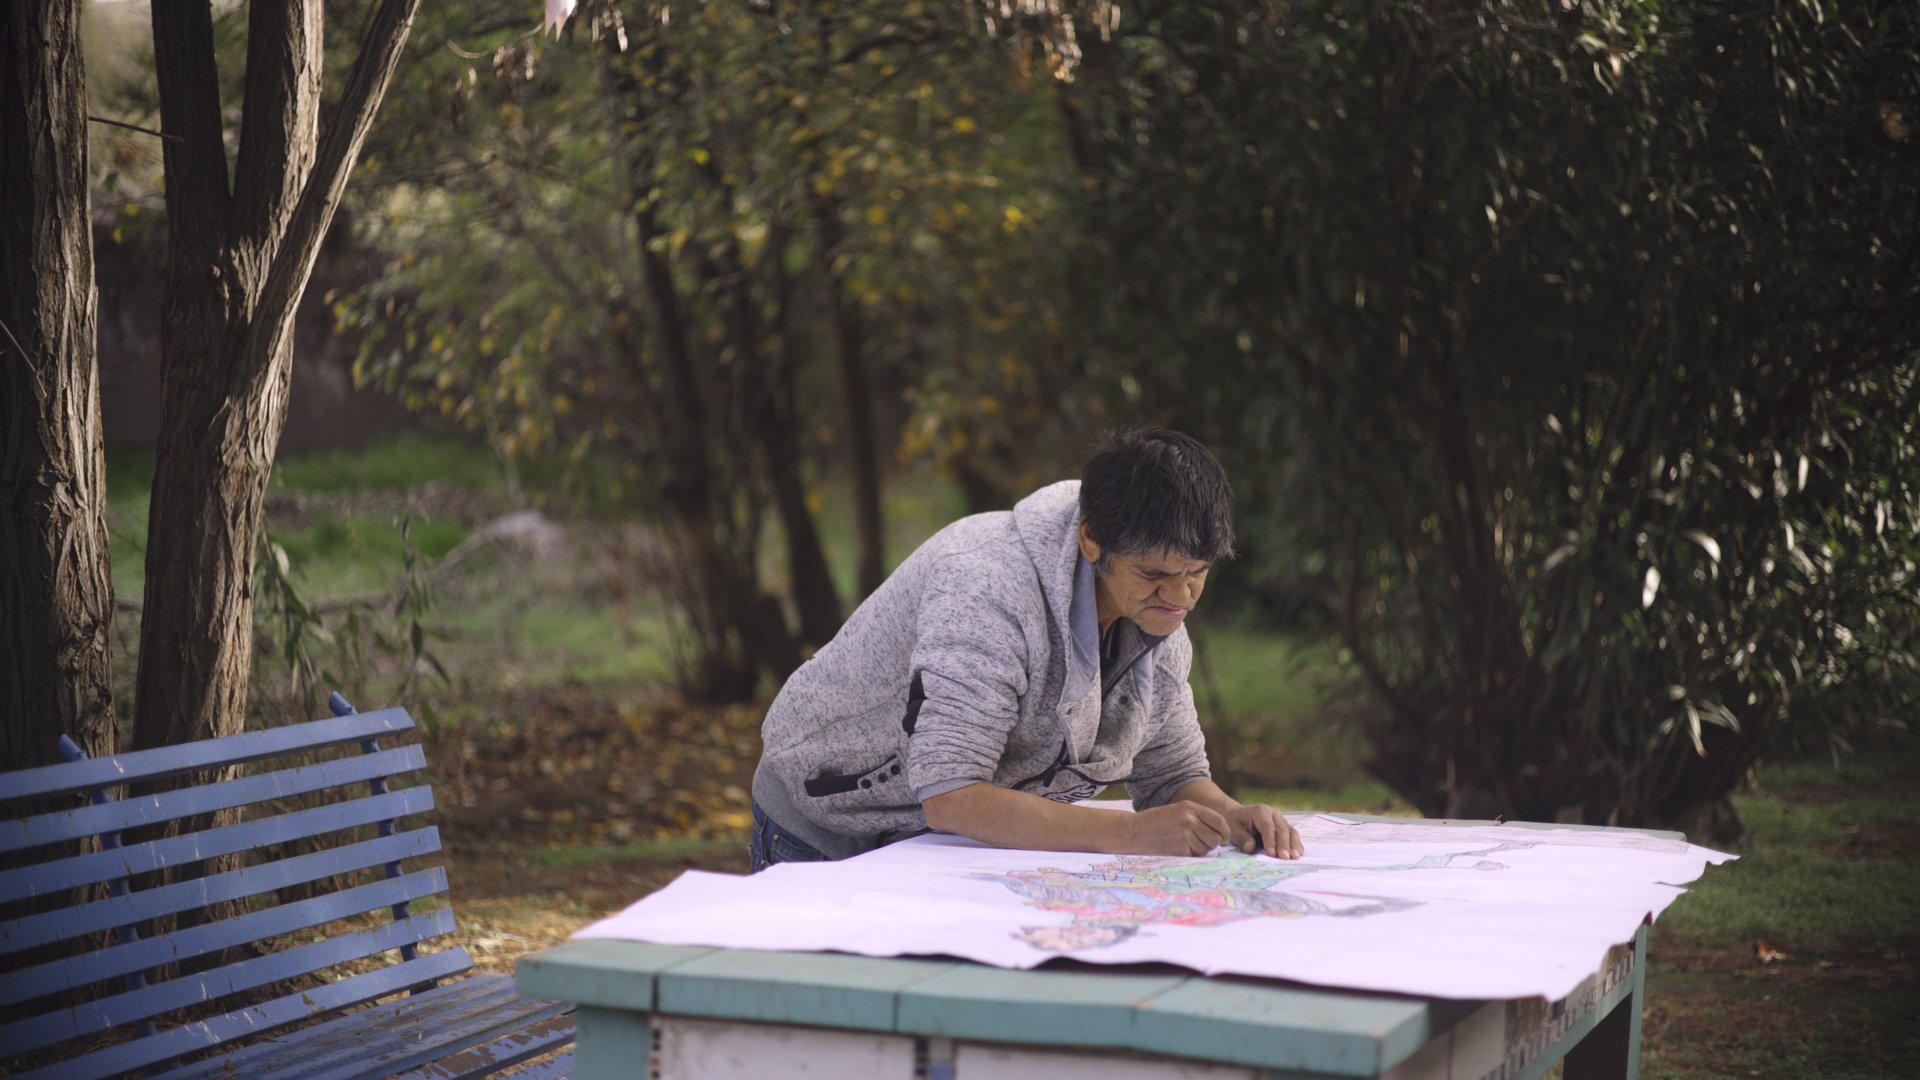 Centro Arte Alameda proyecta documental “Ver es un acto”, una reflexión sobre la salud mental en Chile